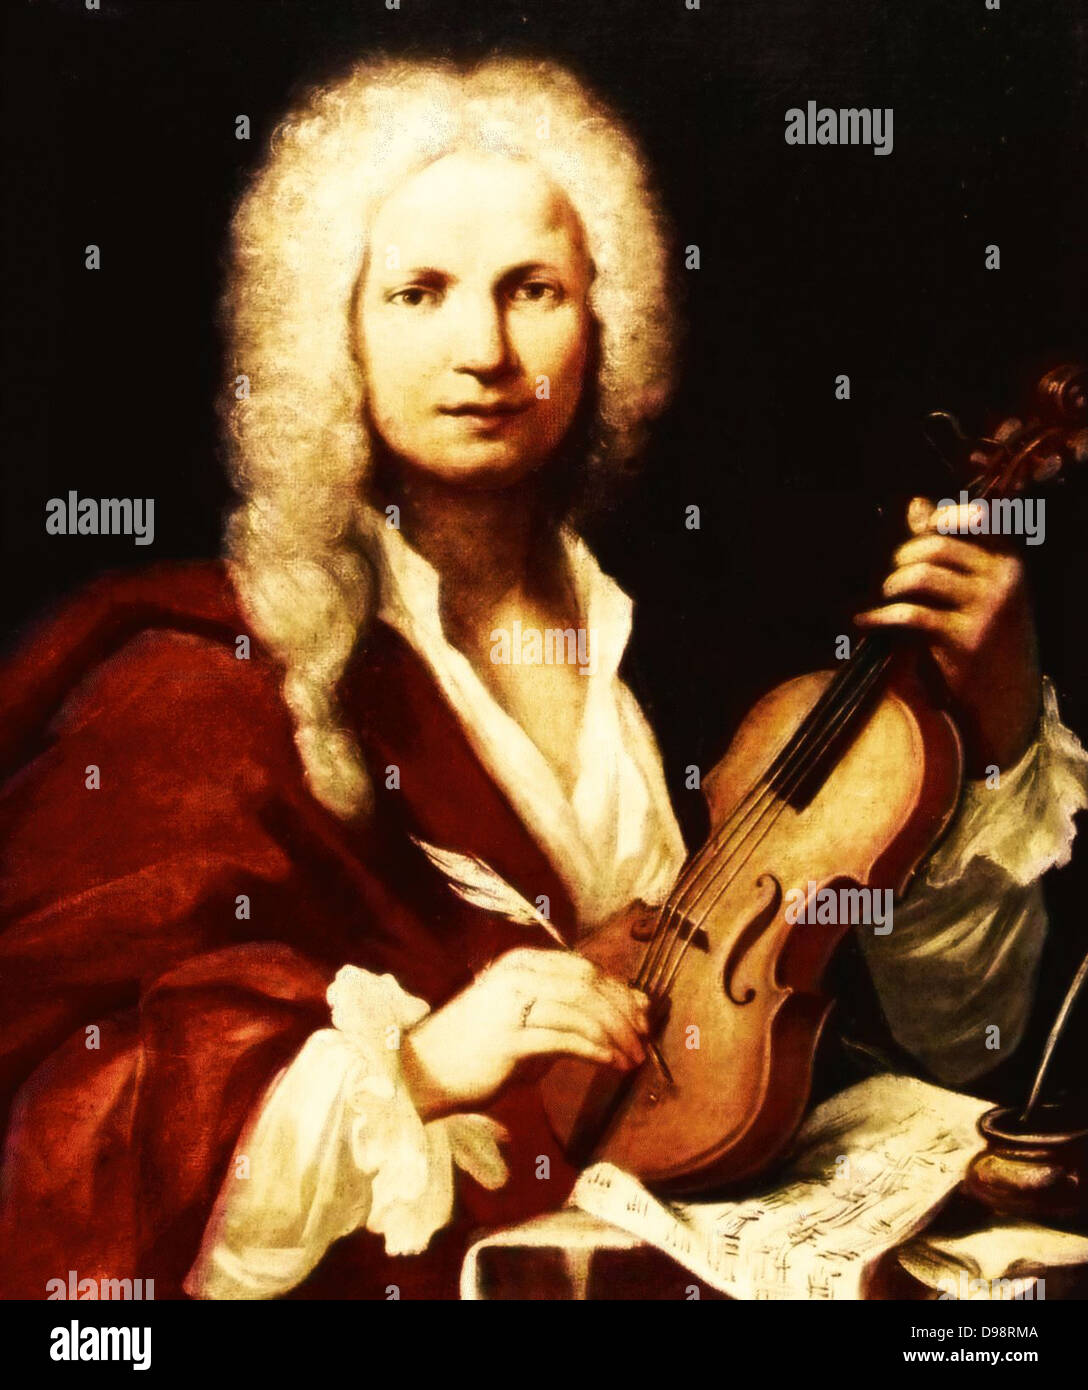 Portrait von Antonio Vivaldi, einem Venezianischen Geiger und Komponist des 18. Jahrhunderts von François Morellon La Cave (1723), Porträt aus dem Museo Bibliografico Musicale, Bologna 1723 Stockfoto